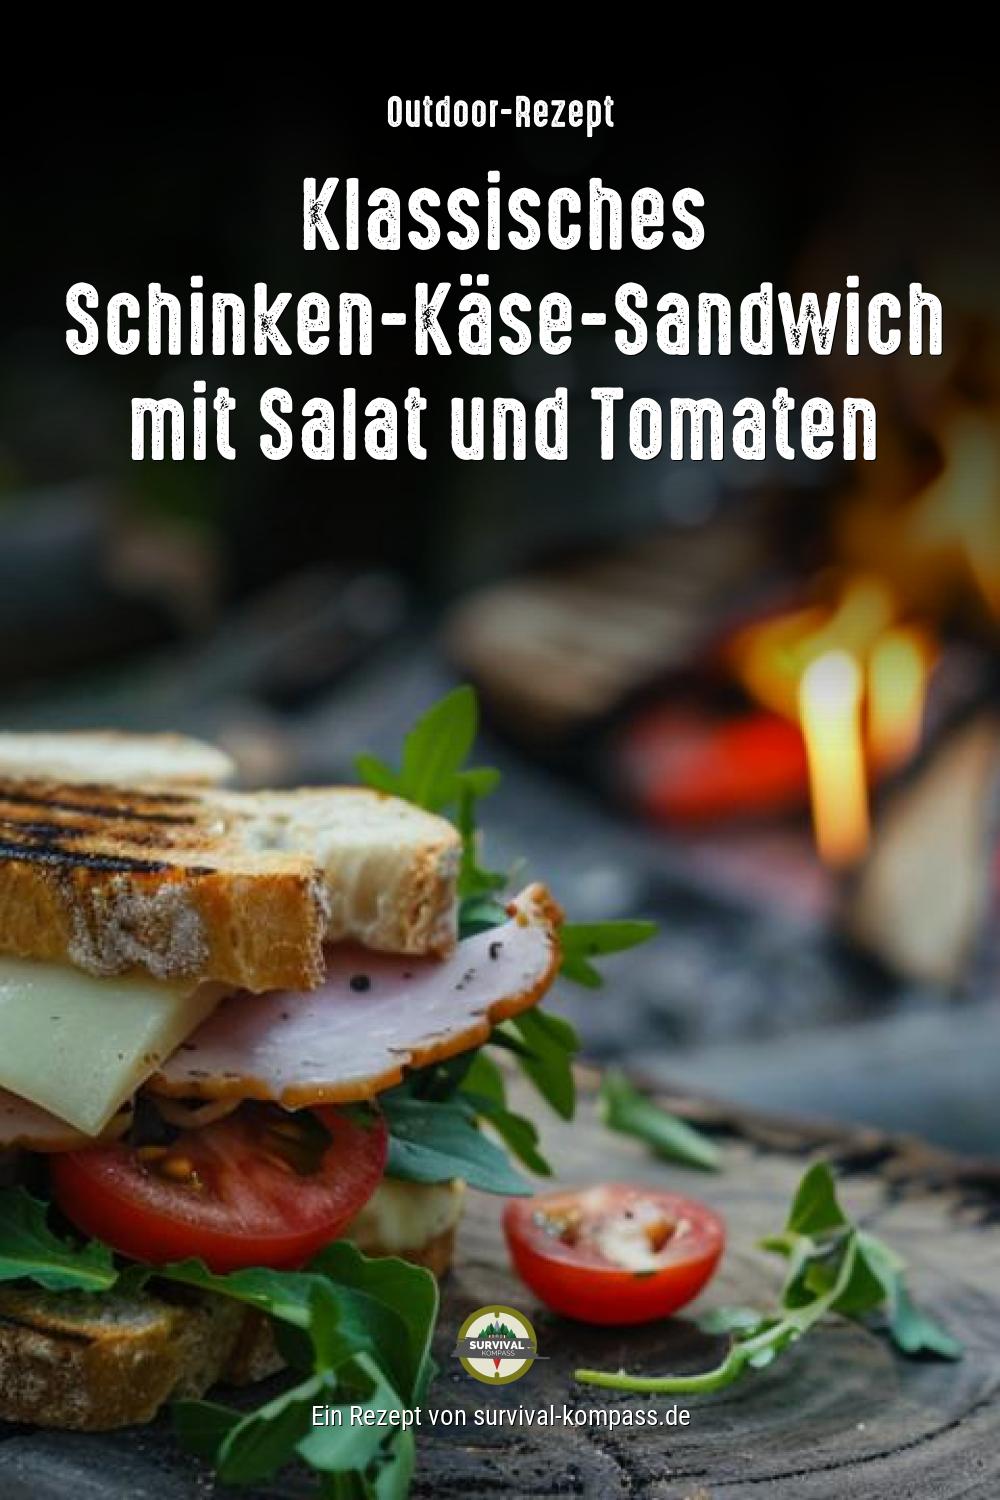 Klassisches Schinken-Käse-Sandwich mit Salat und Tomaten